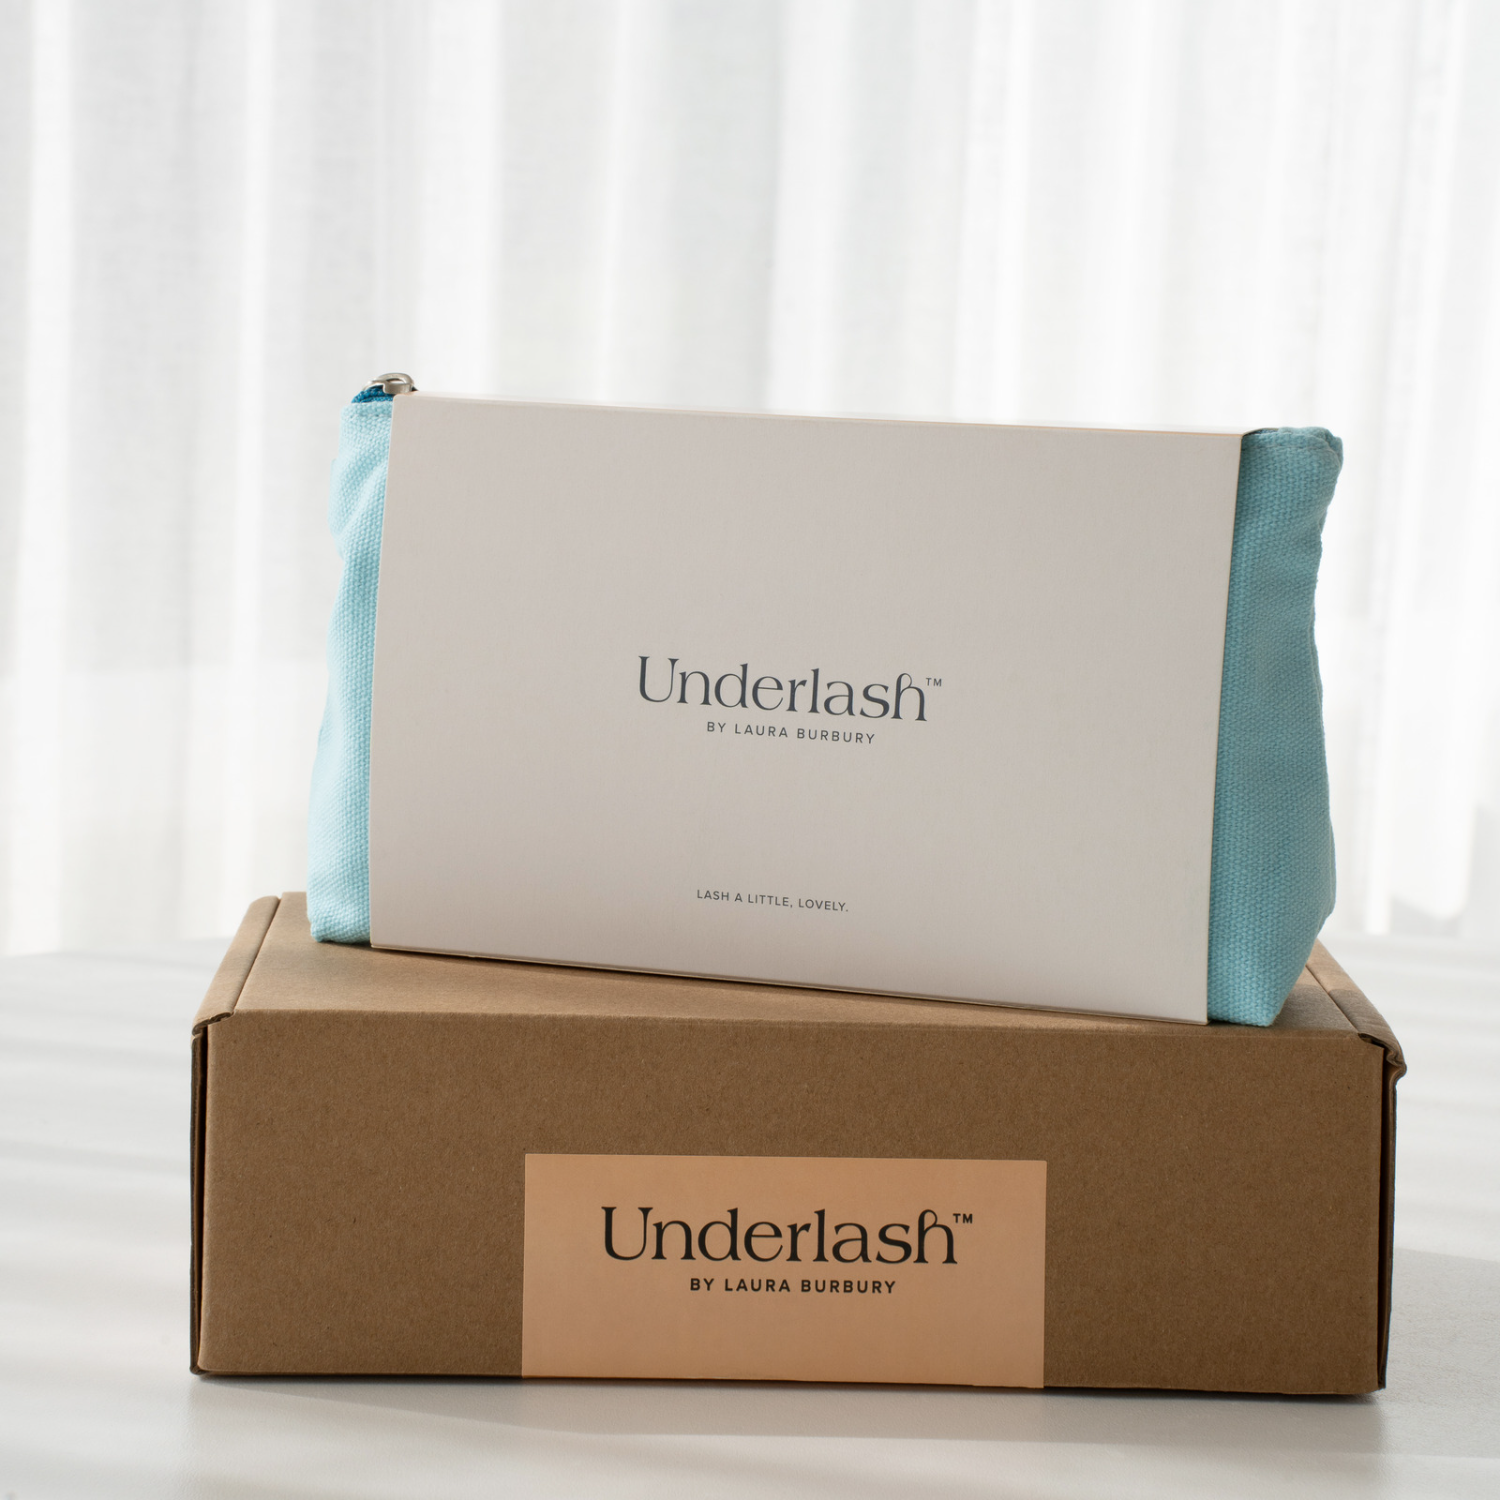 Underlash Australia kit